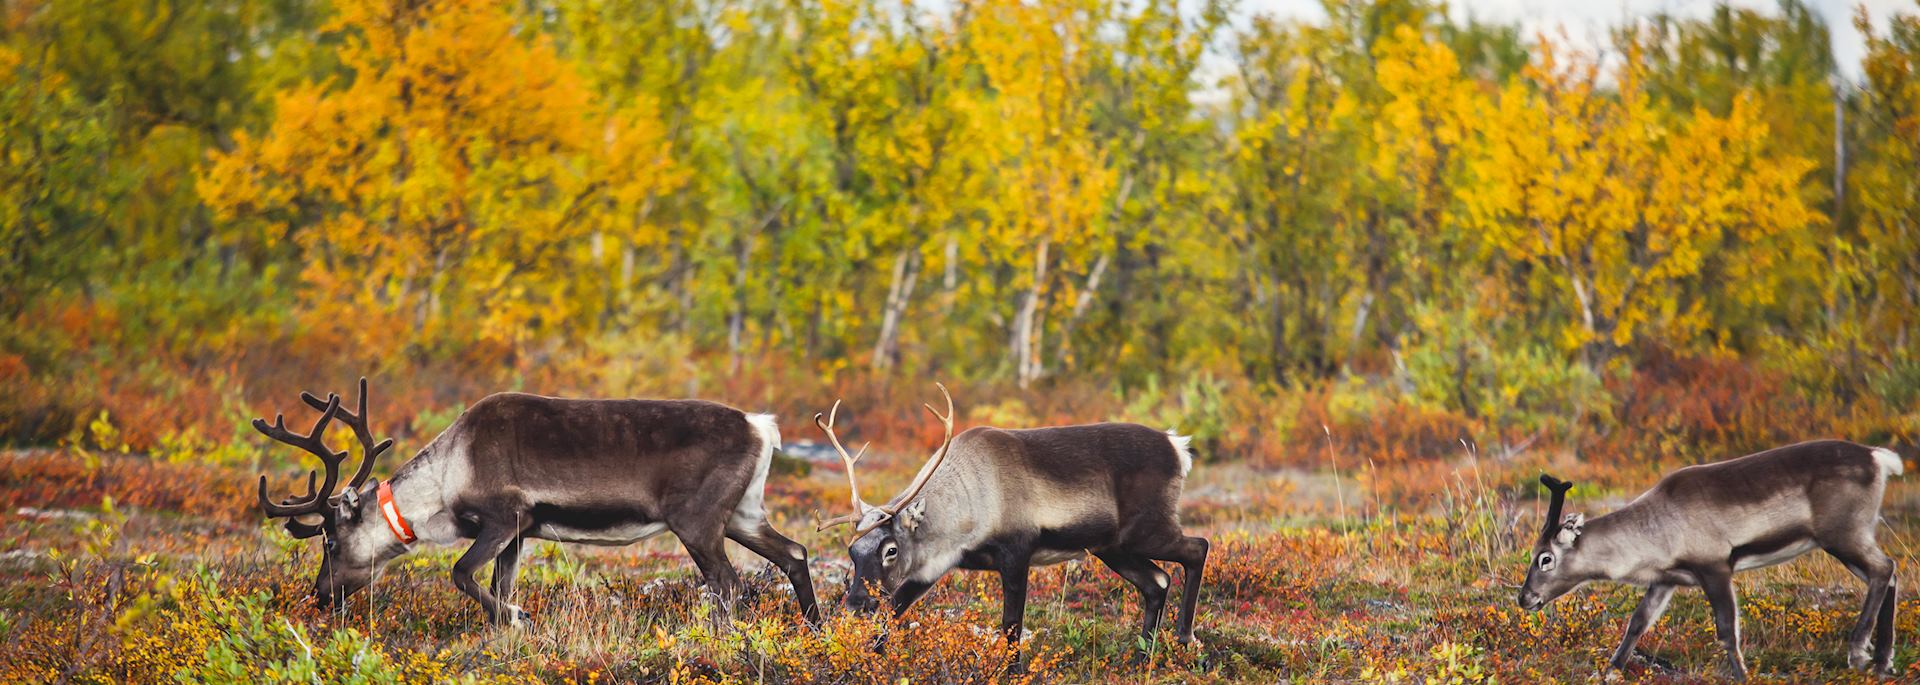 Reindeer grazing in Swedish Lapland